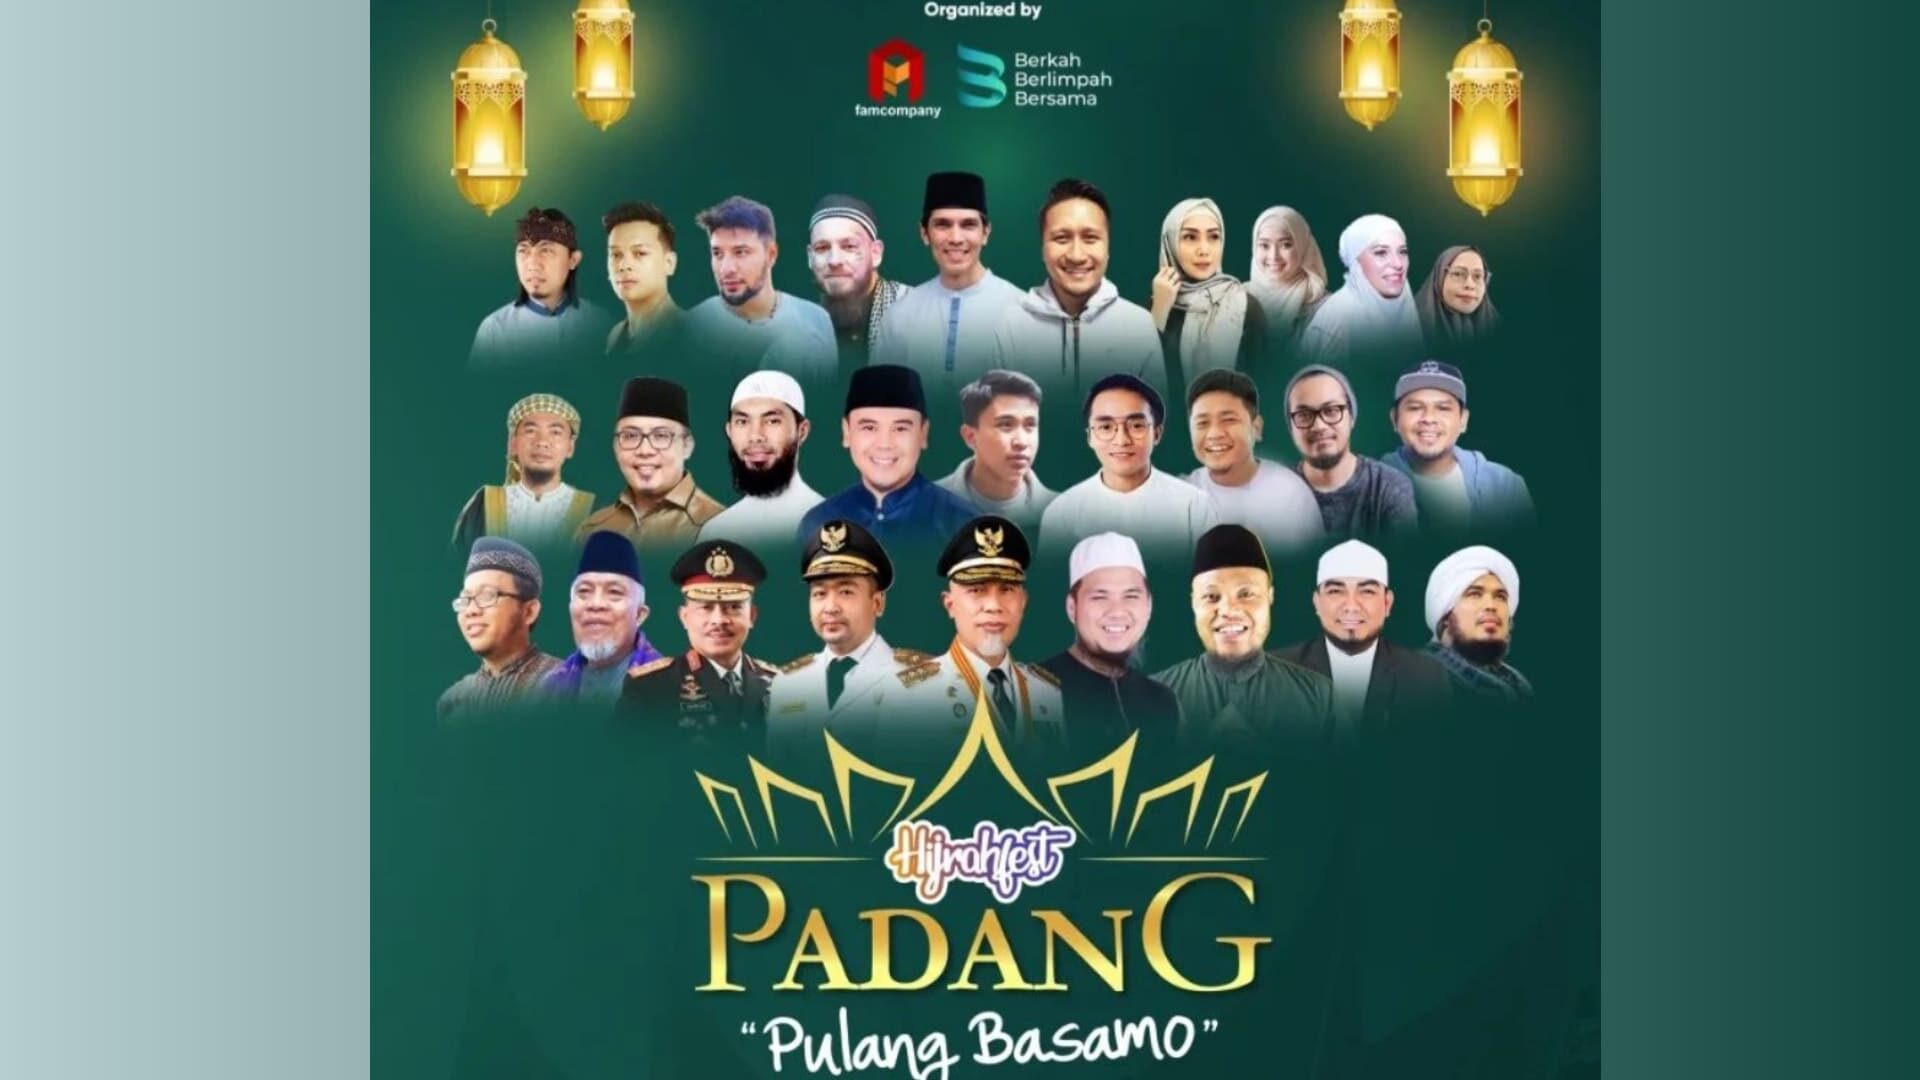 Ini Dia Daftar Bintang Tamu Hijrahfest Padang "Pulang Basamo"